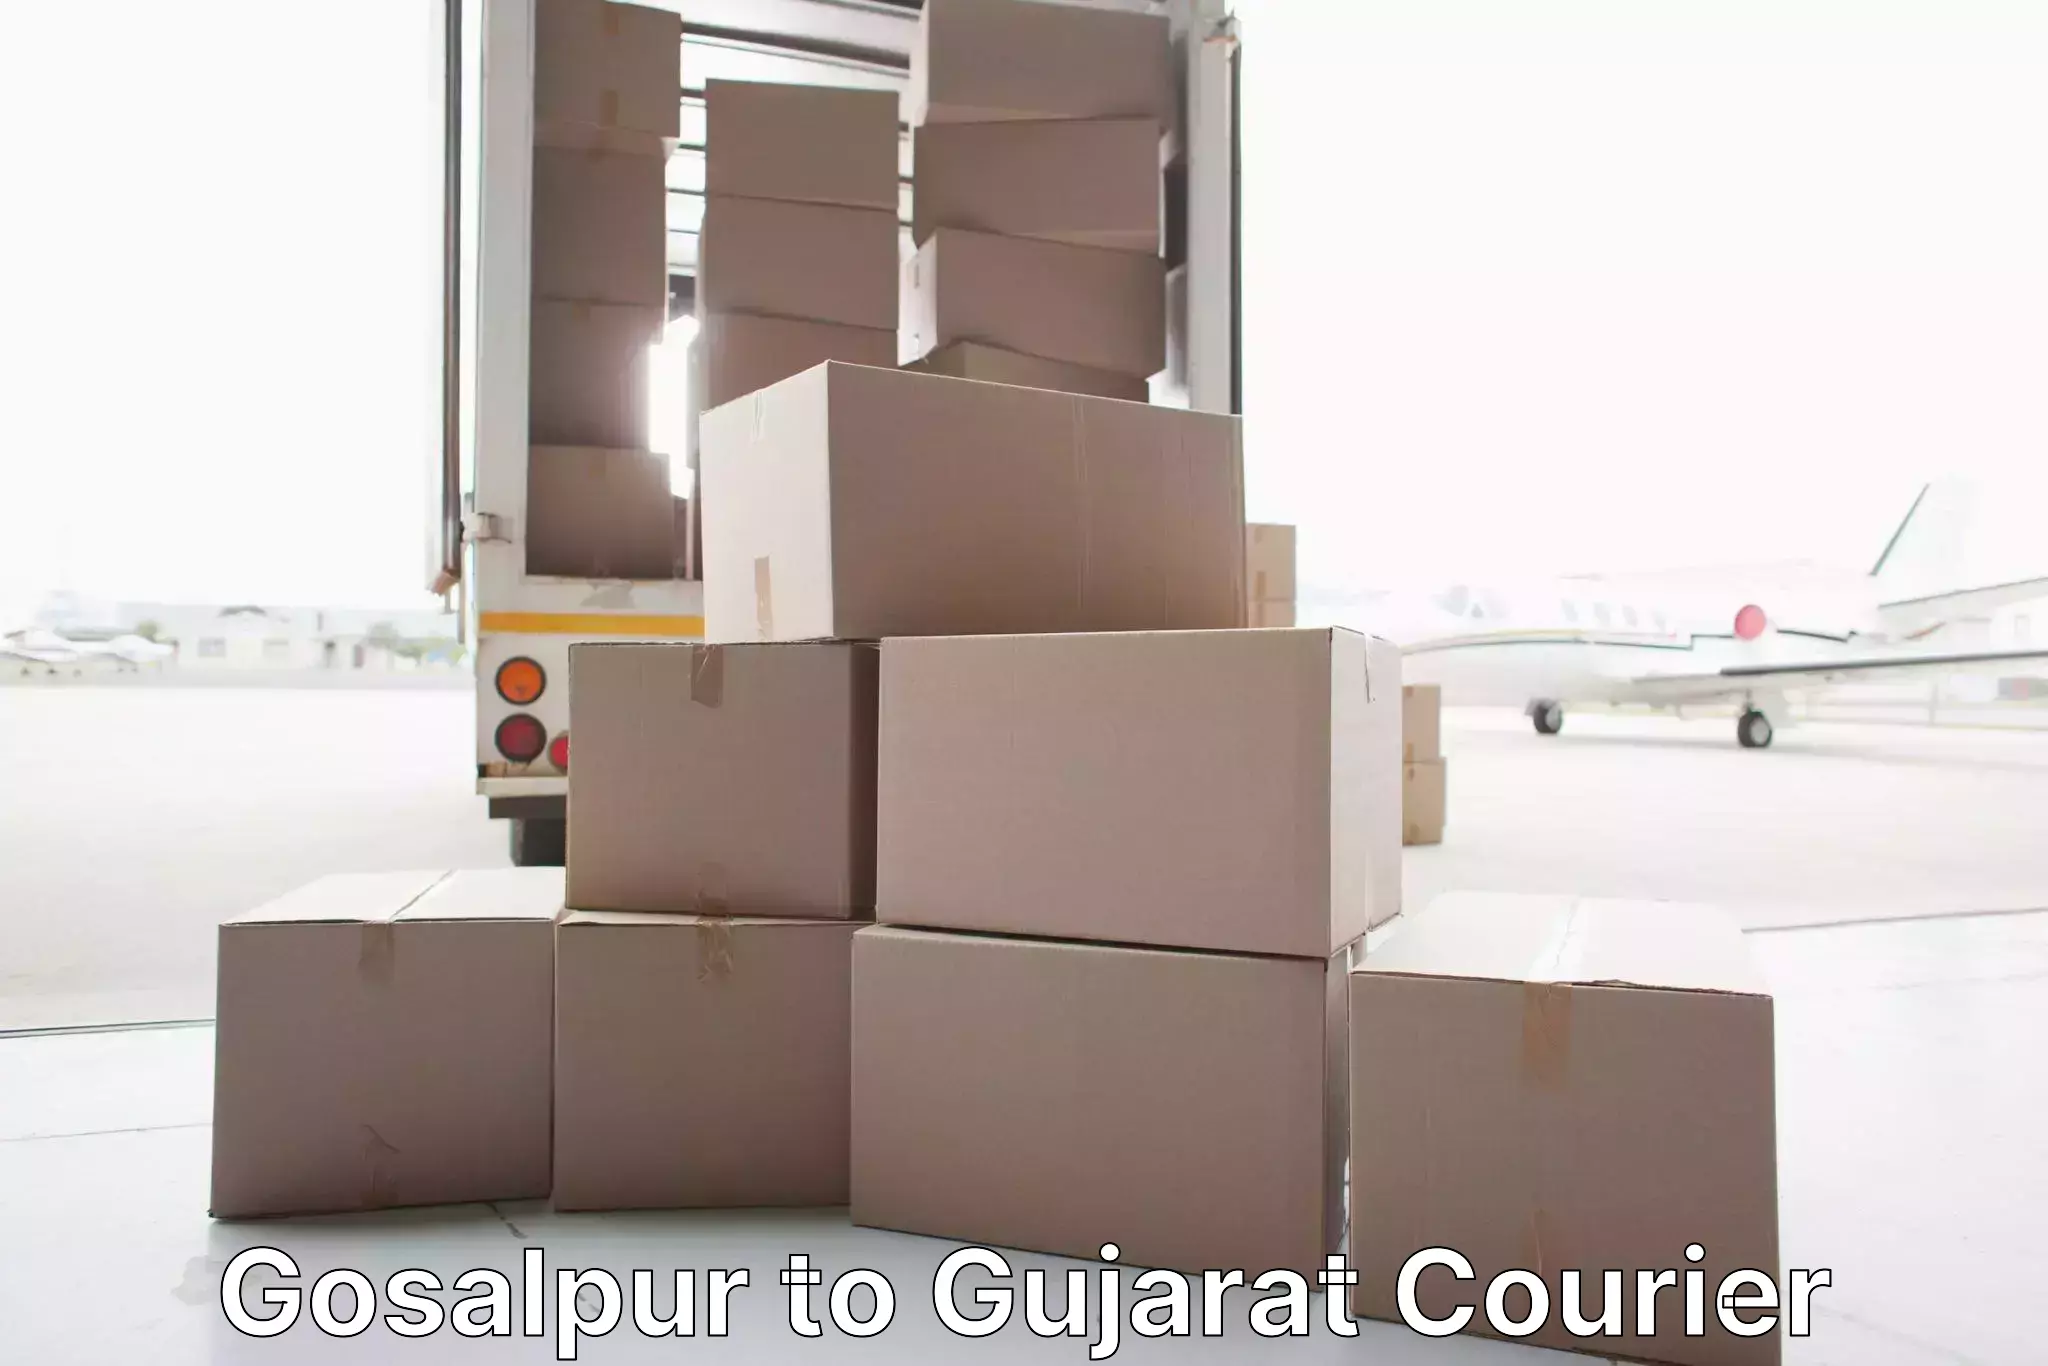 Reliable relocation services Gosalpur to Rapar